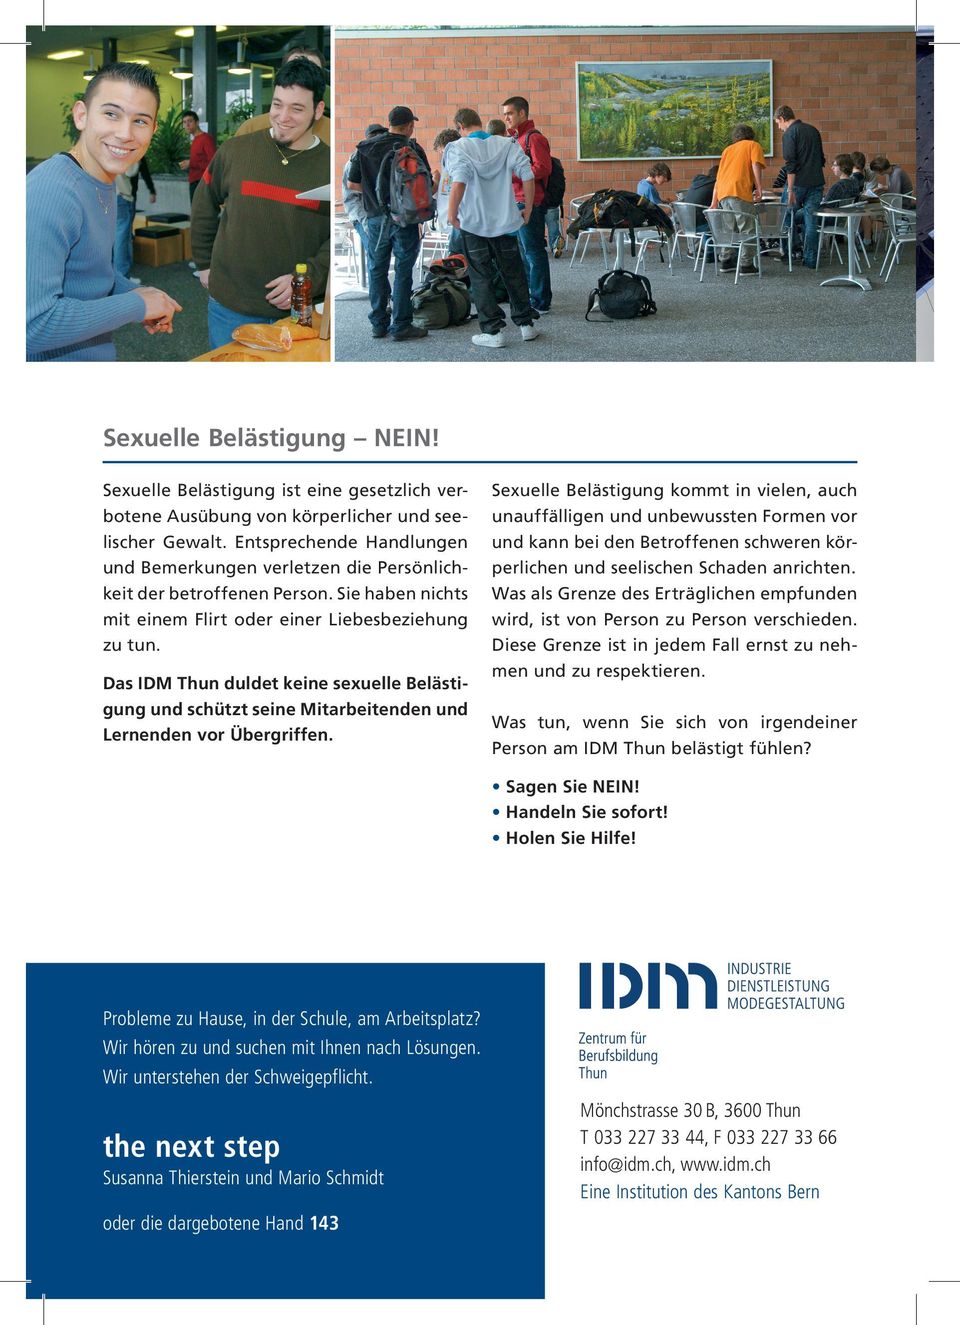 Das IDM Thun duldet keine sexuelle Belästigung und schützt seine Mitarbeitenden und Lernenden vor Übergriffen.